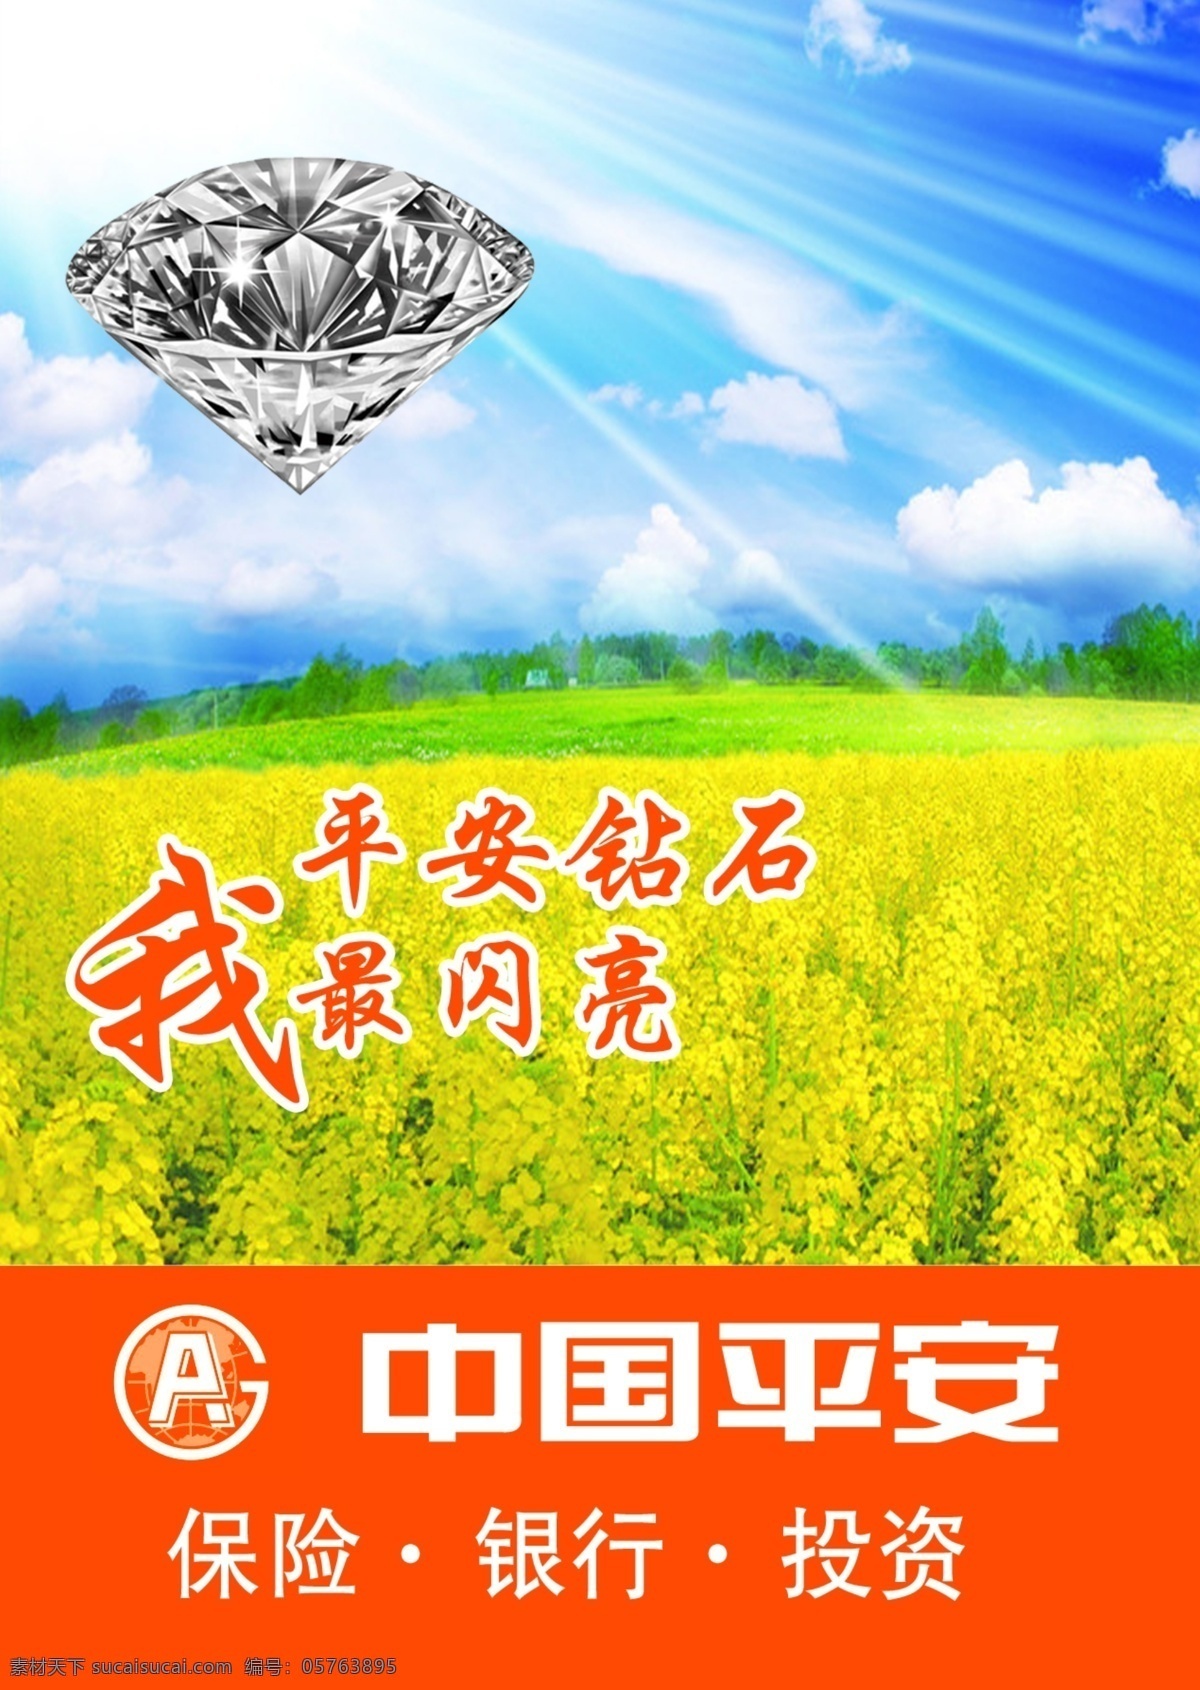 平安 钻石 最 闪亮 中国平安 平安保险 投资 银行 加人物洗照片 钻石闪亮 原创设计 原创海报